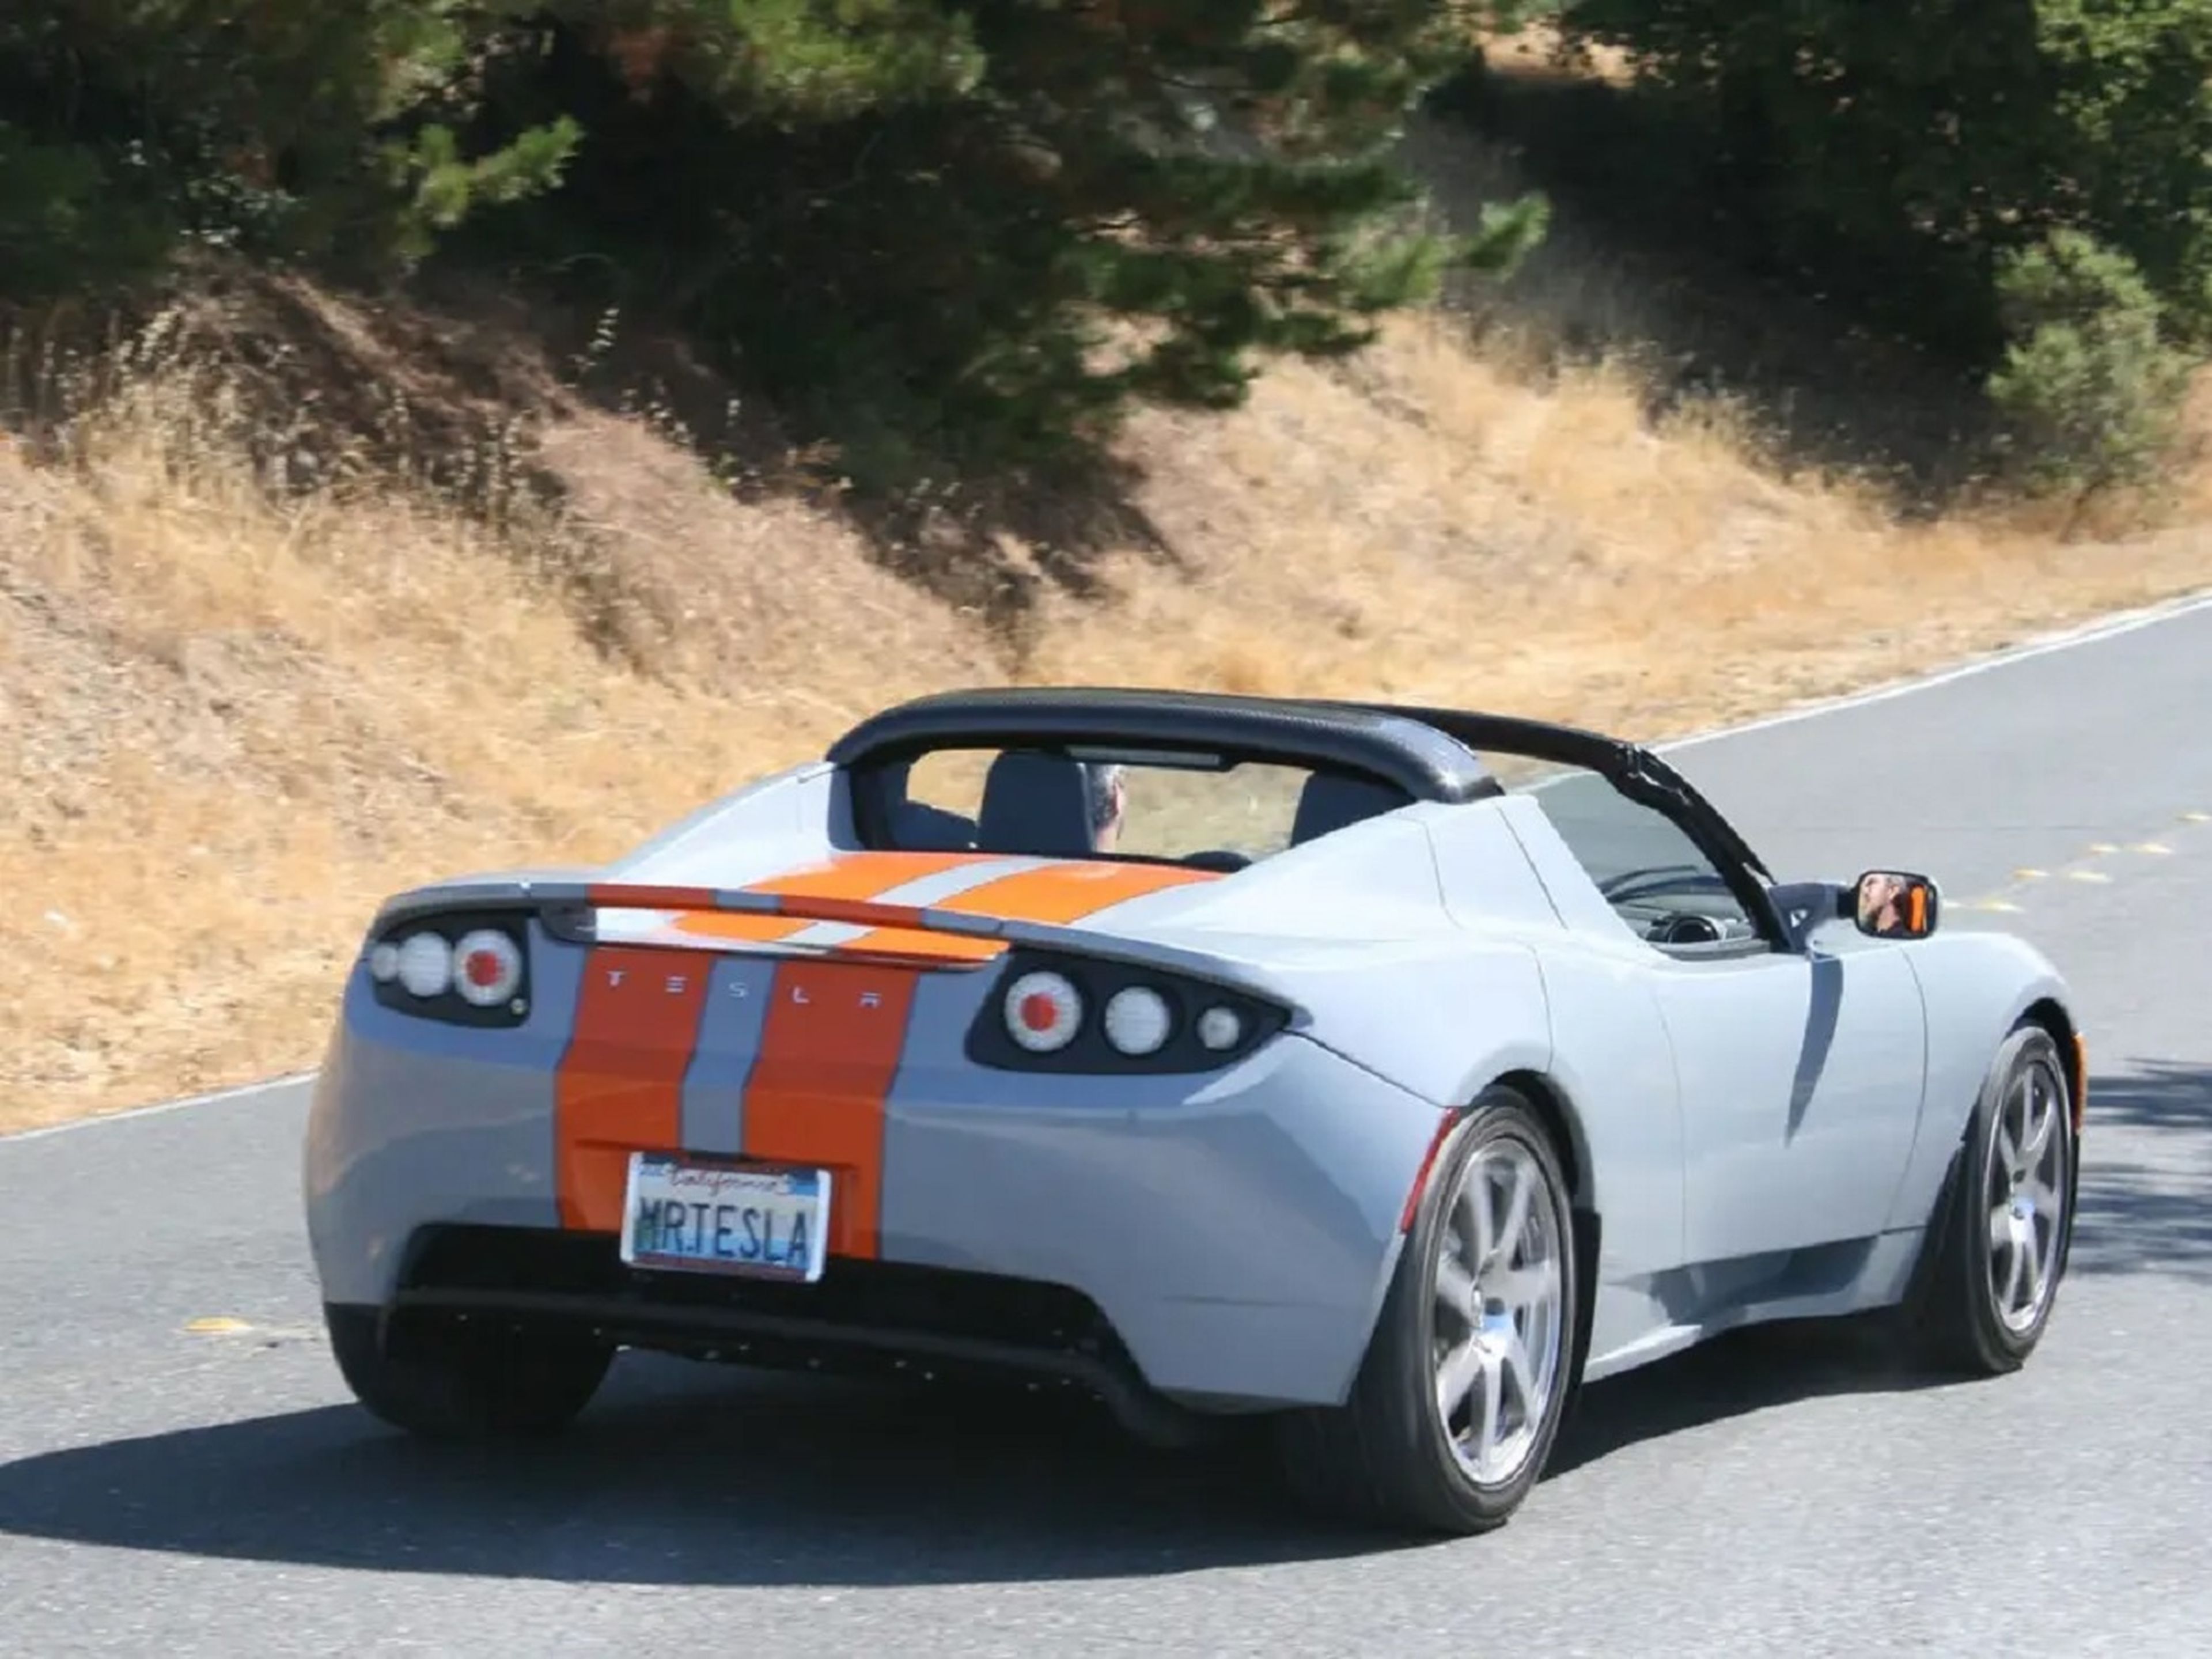 Eberhard lleva en su Roadster la placa de identificación "Mr. Tesla".